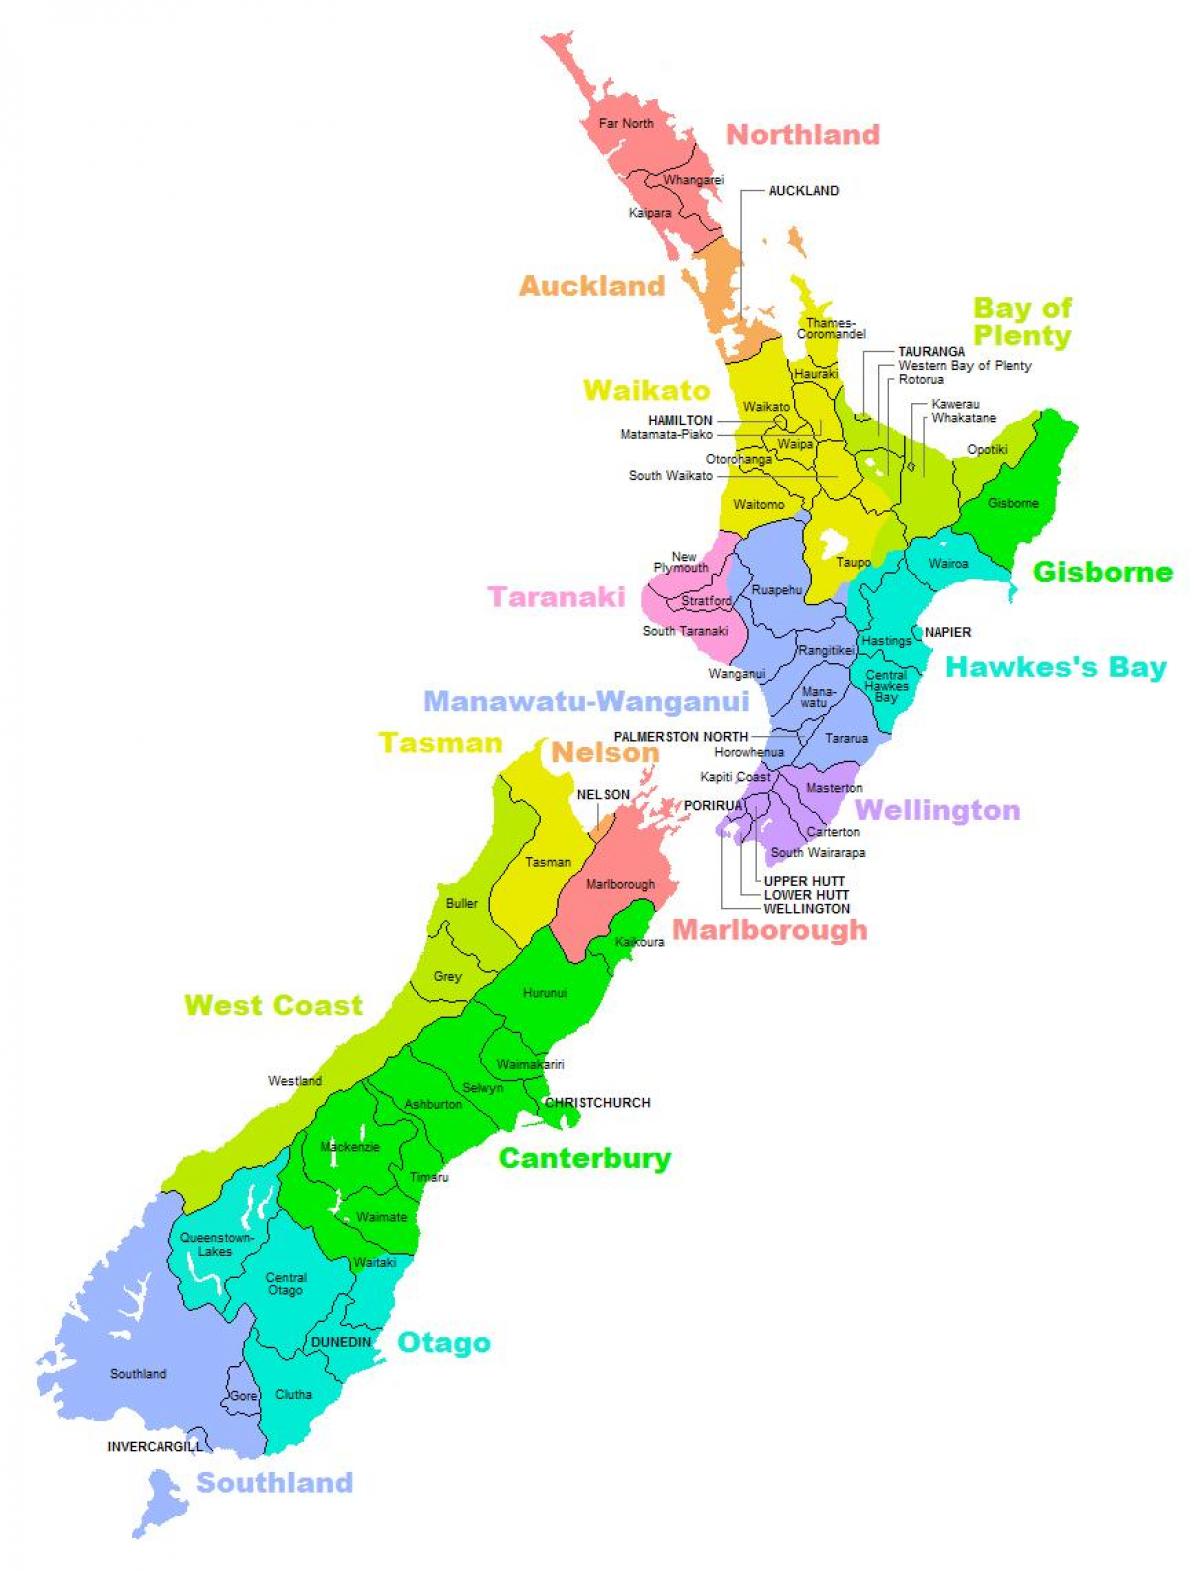 Նոր Զելանդիա շրջան քարտեզի վրա